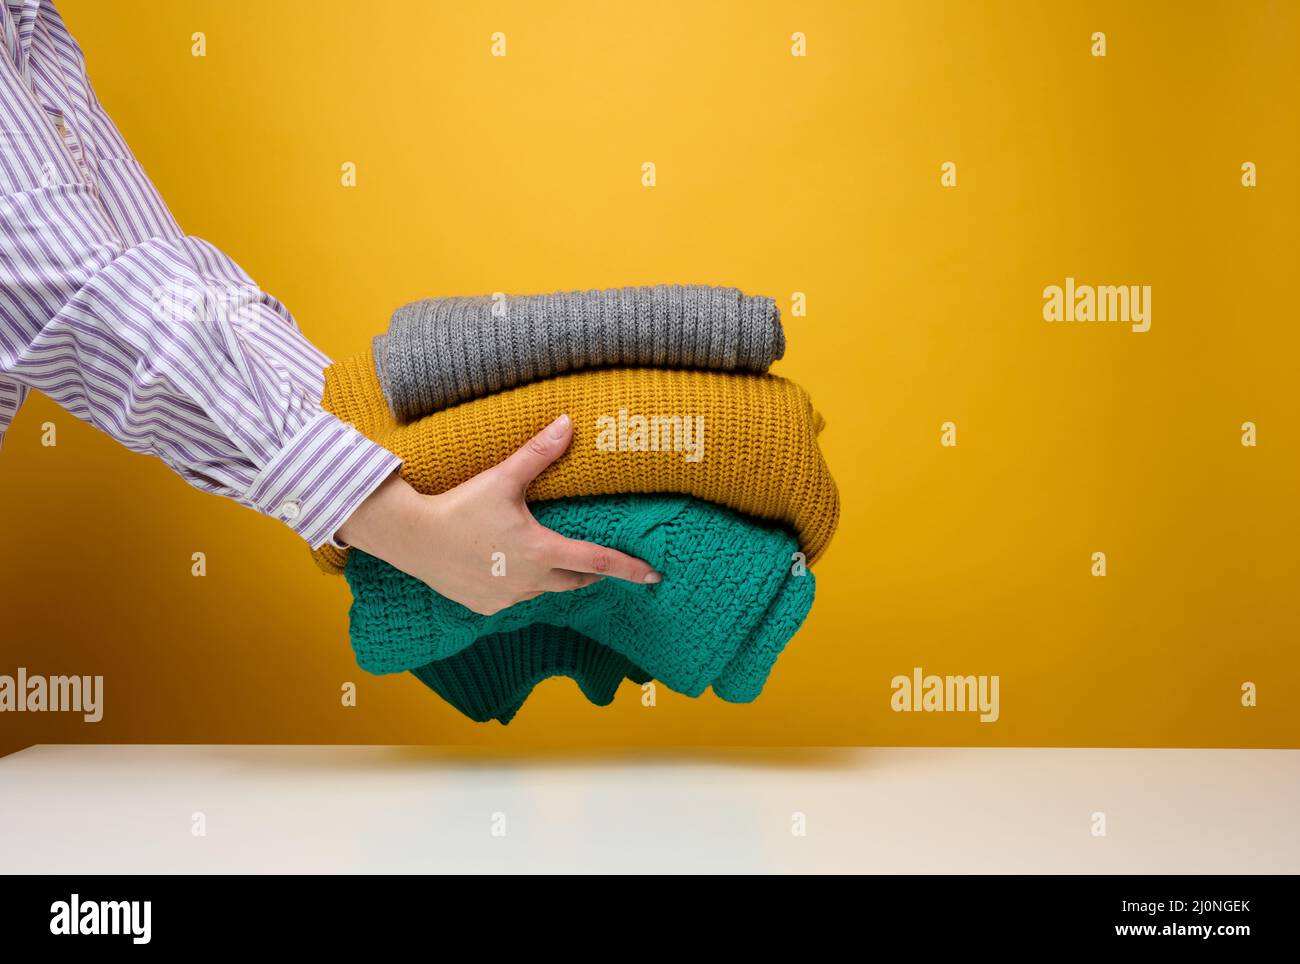 Frau mit einem Stapel gestrickter, gefaltetem Pullover auf gelbem Hintergrund. Wäsche waschen, Wäsche putzen Stockfoto